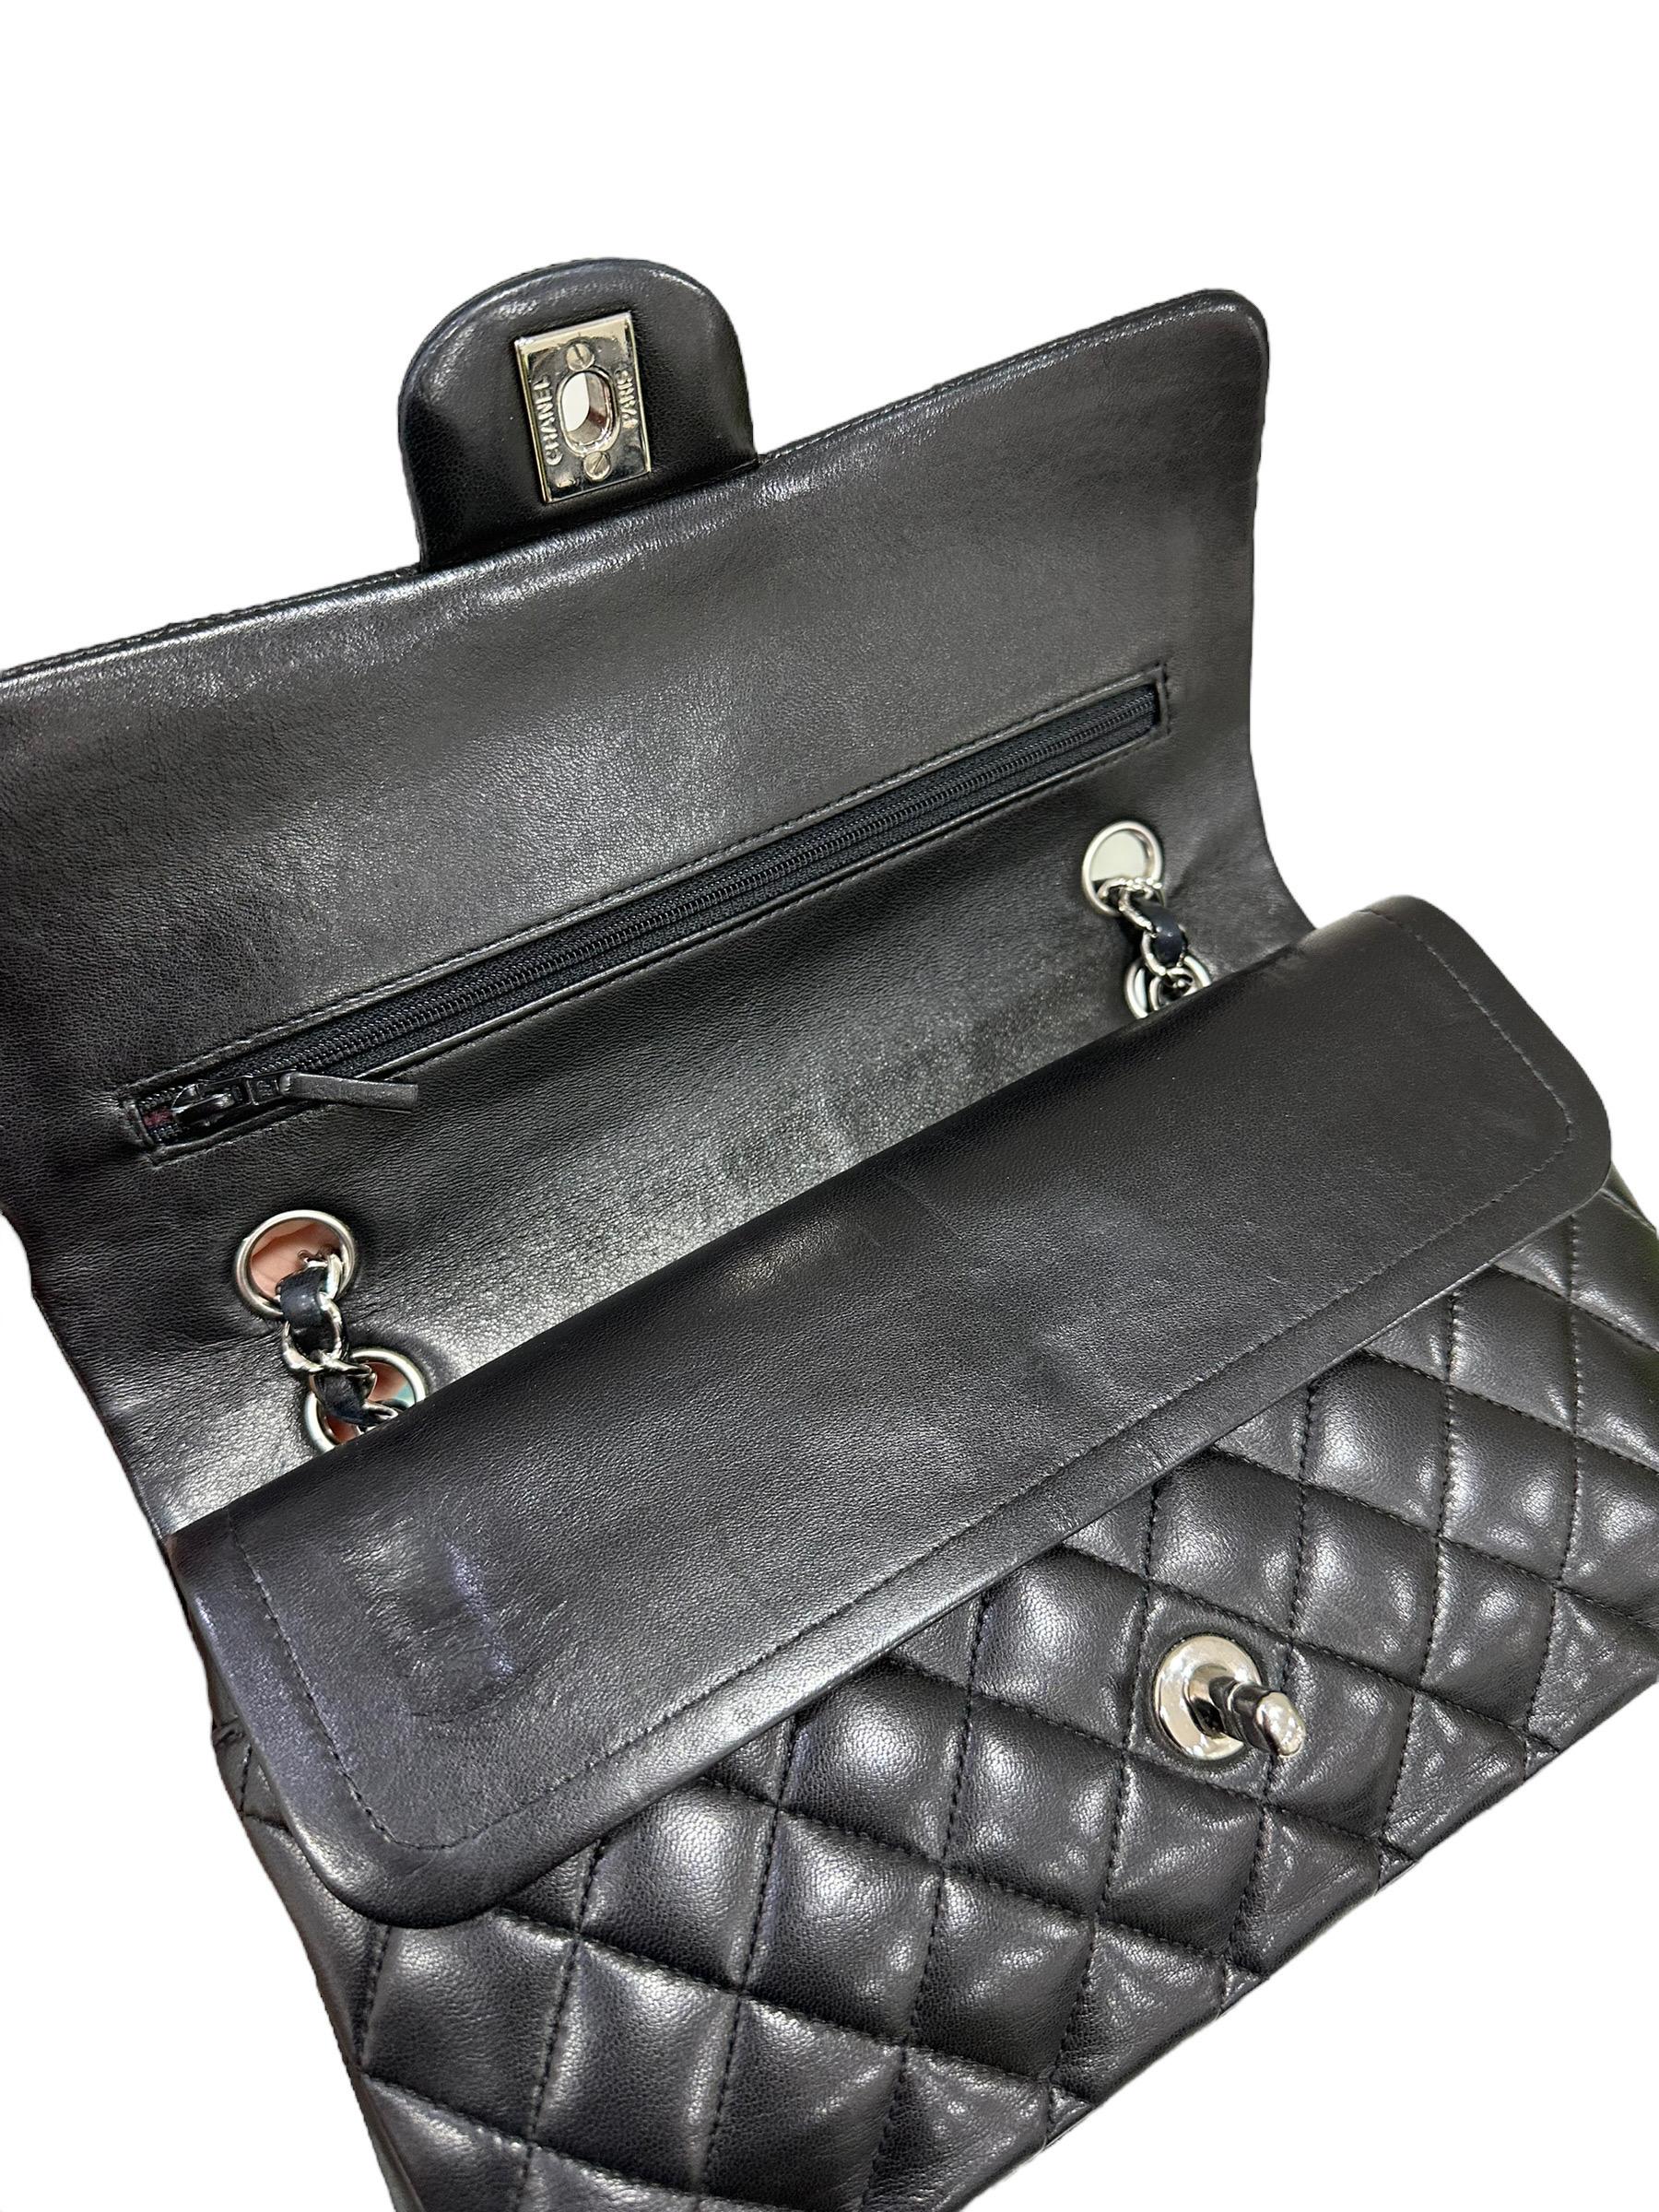 2008 Chanel. 2.55 Timeless Black Leather Shoulder Bag 10